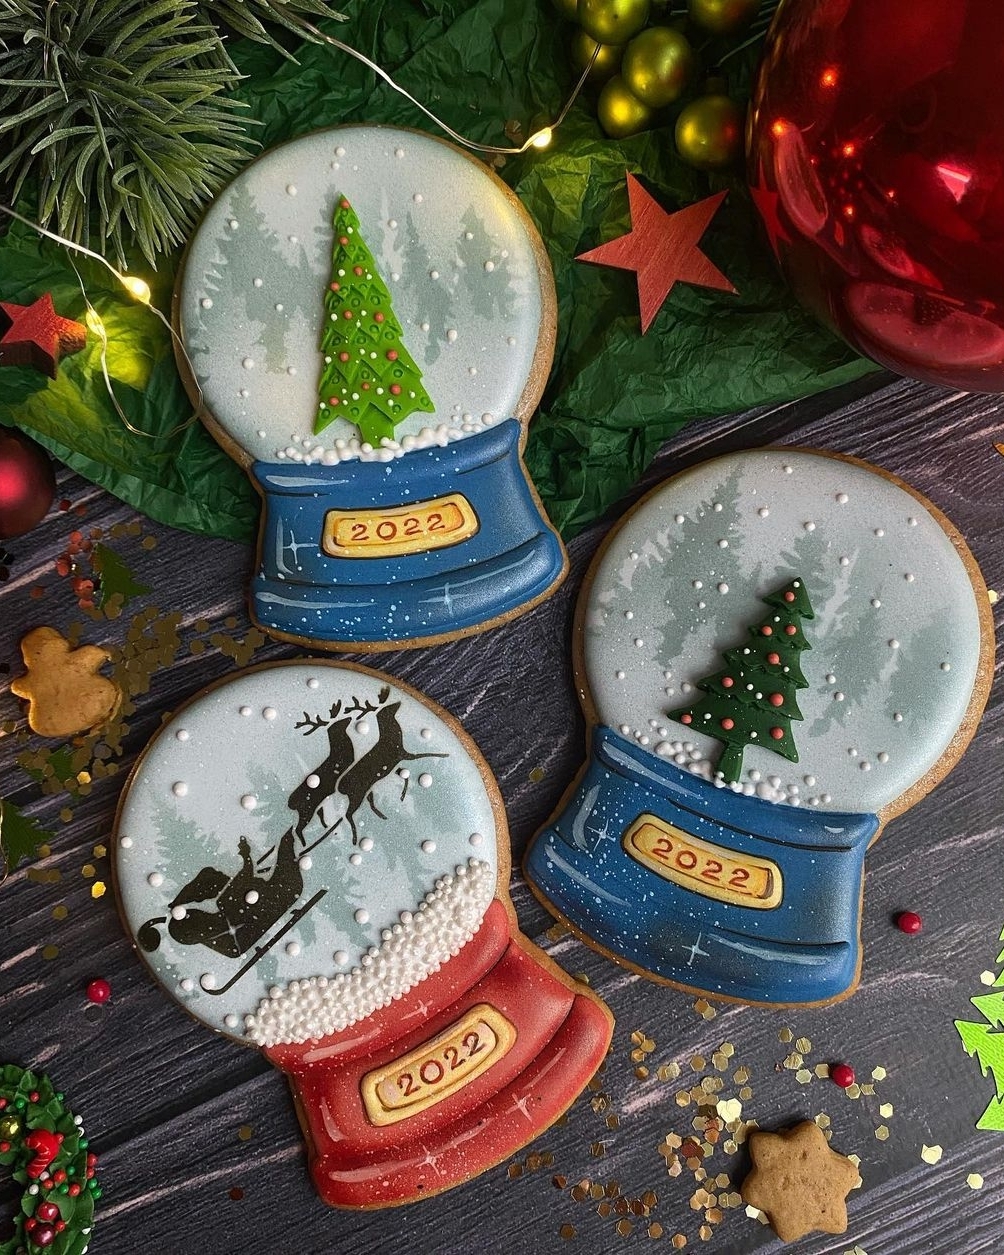 48 Best Christmas Cookie Designs